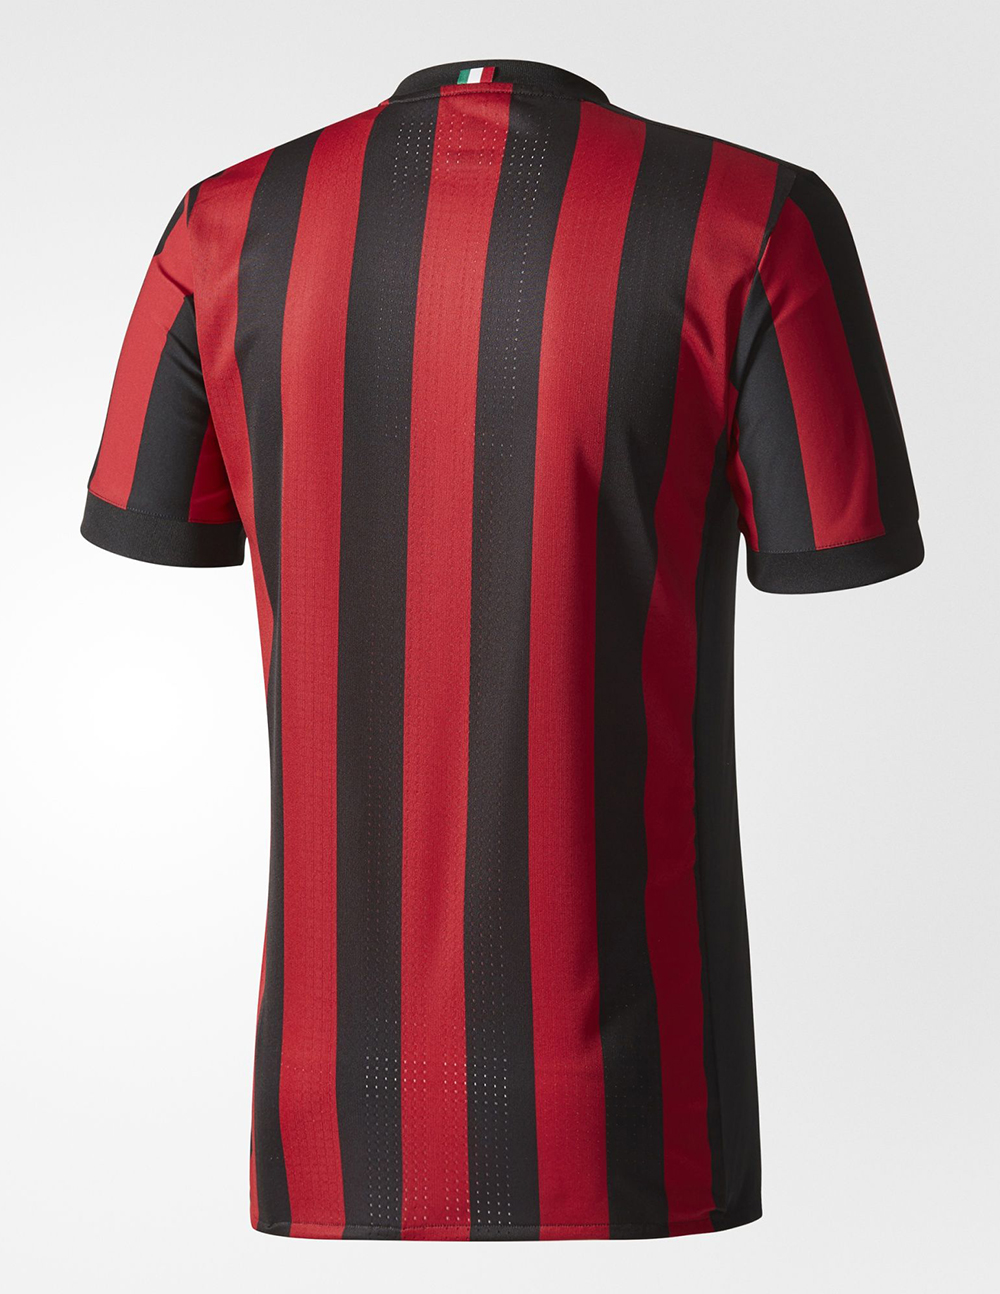 AC Milan adidas Home Kit 2017 18